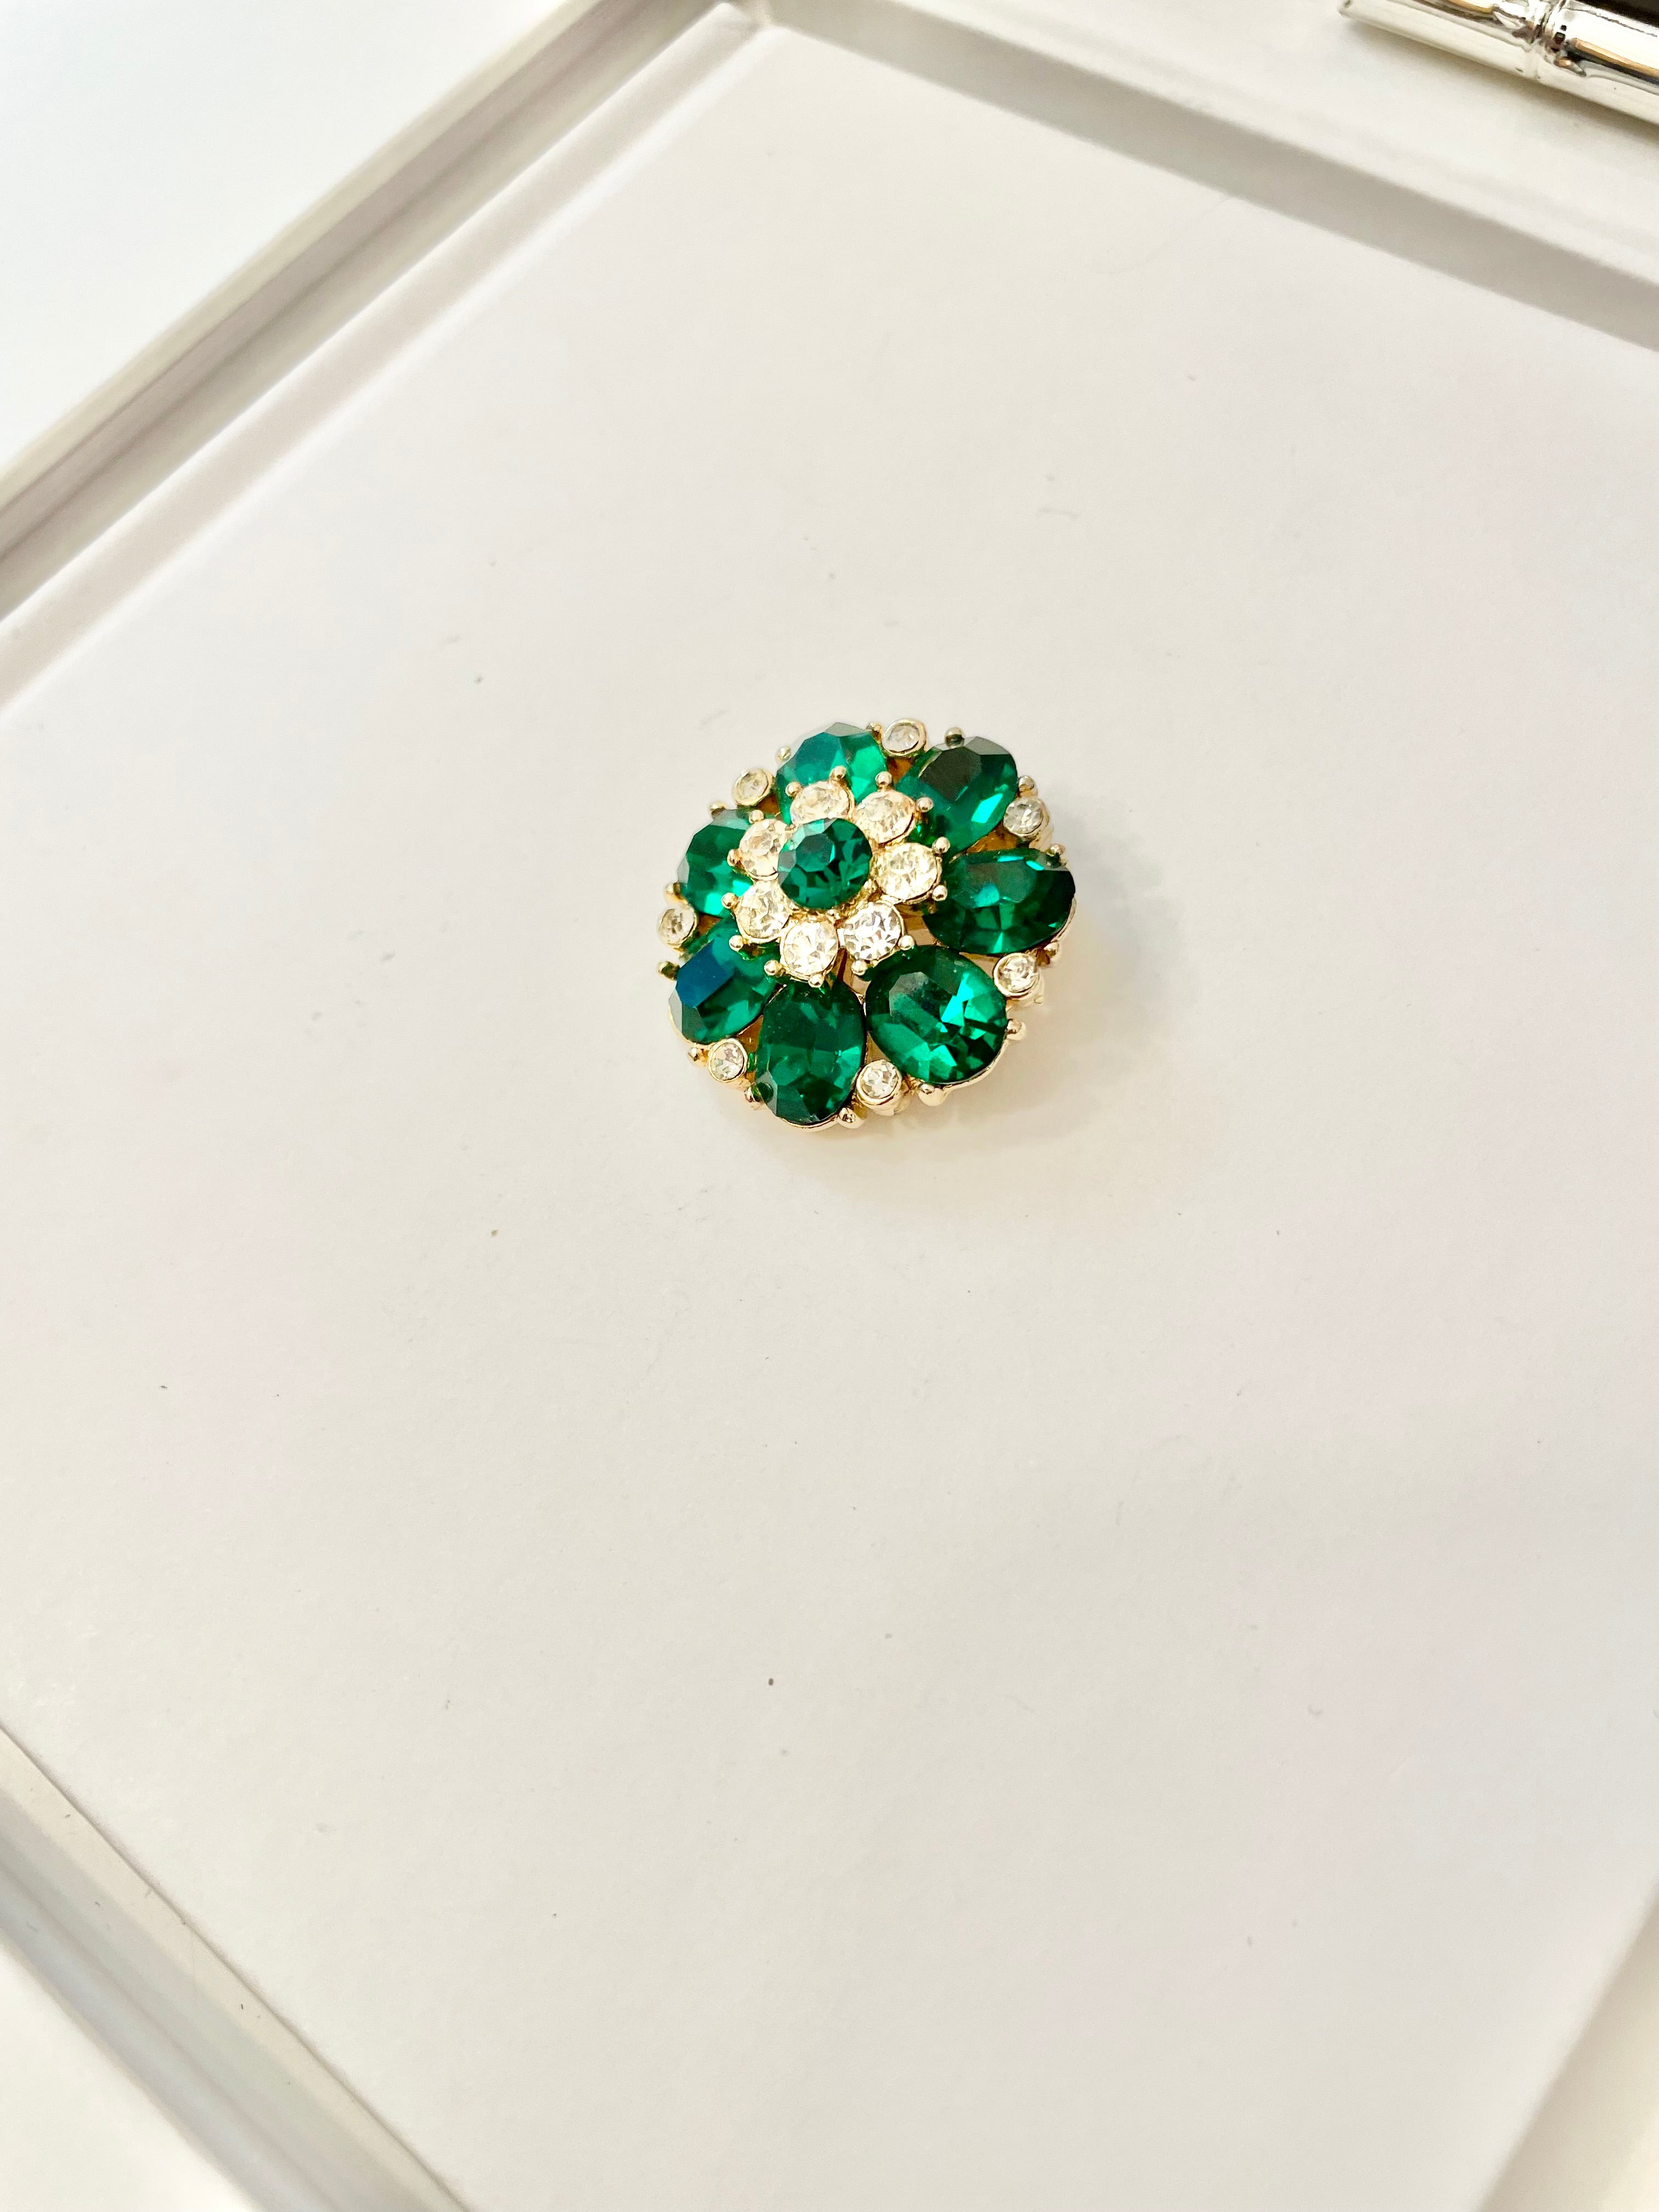 The prettiest petite emerald glass brooch.... so sweet